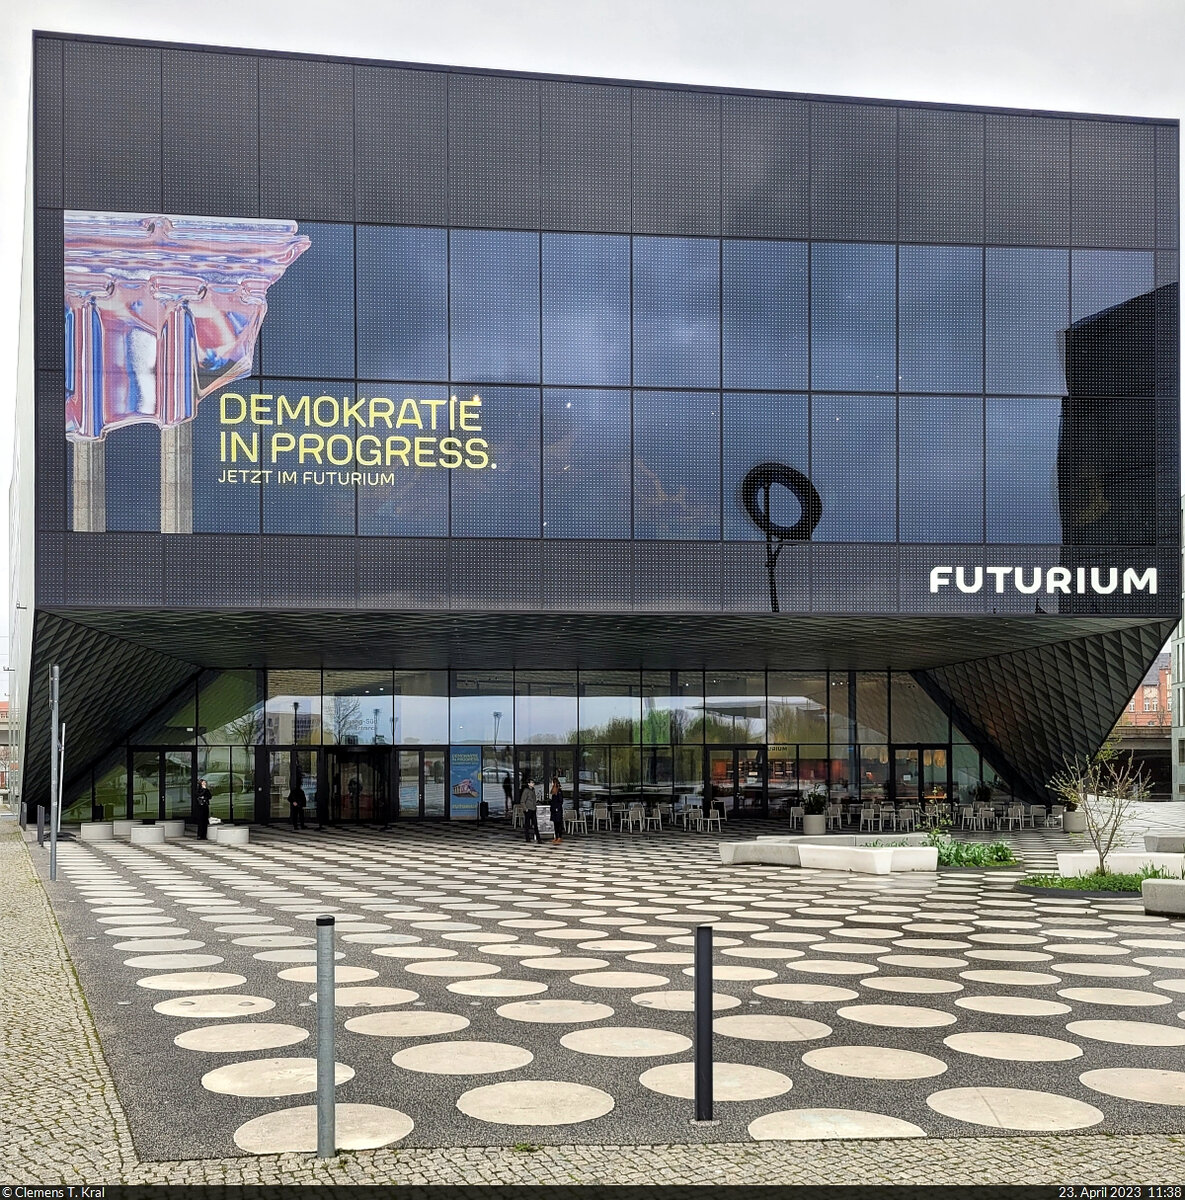 Seit knapp vier Jahren ldt das Futurium am Alexanderufer Berlin-Mitte zu einer Ausstellung rund um Zukunftsfragen ein. Diese kann kostenlos besichtigt werden.

🕓 23.4.2023 | 11:38 Uhr